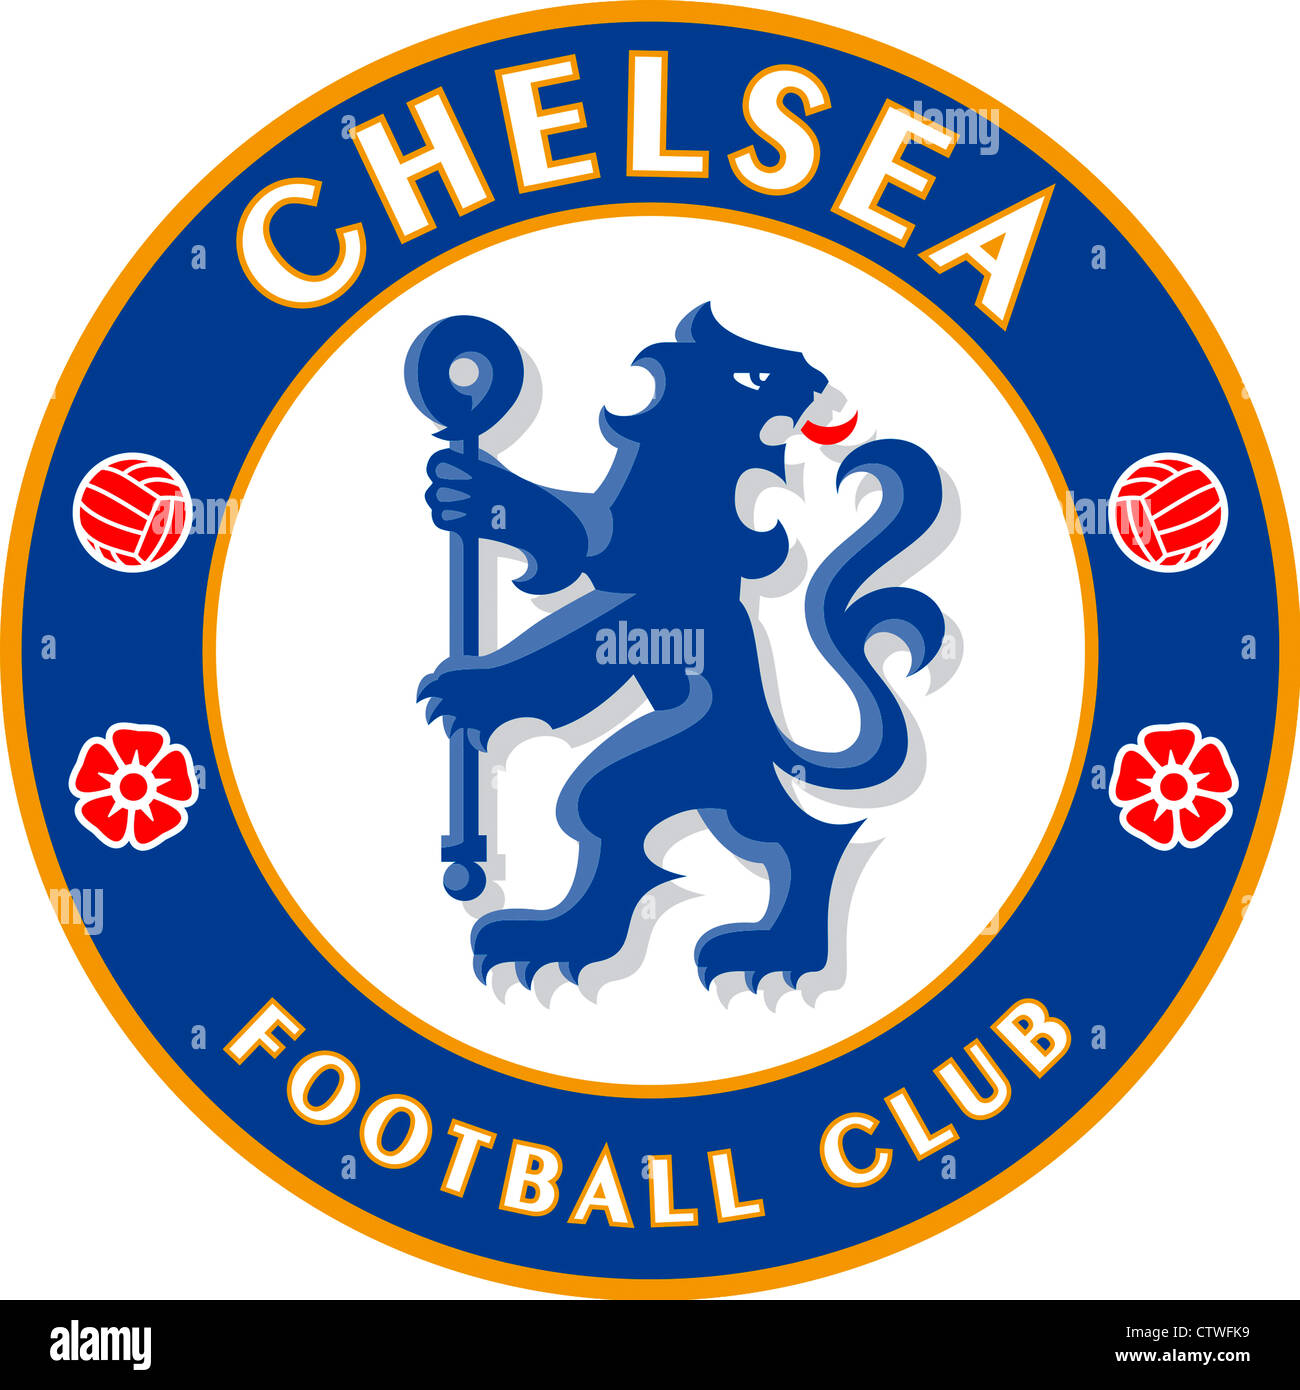 El logotipo del equipo de fútbol inglés Chelsea FC Fotografía de stock -  Alamy